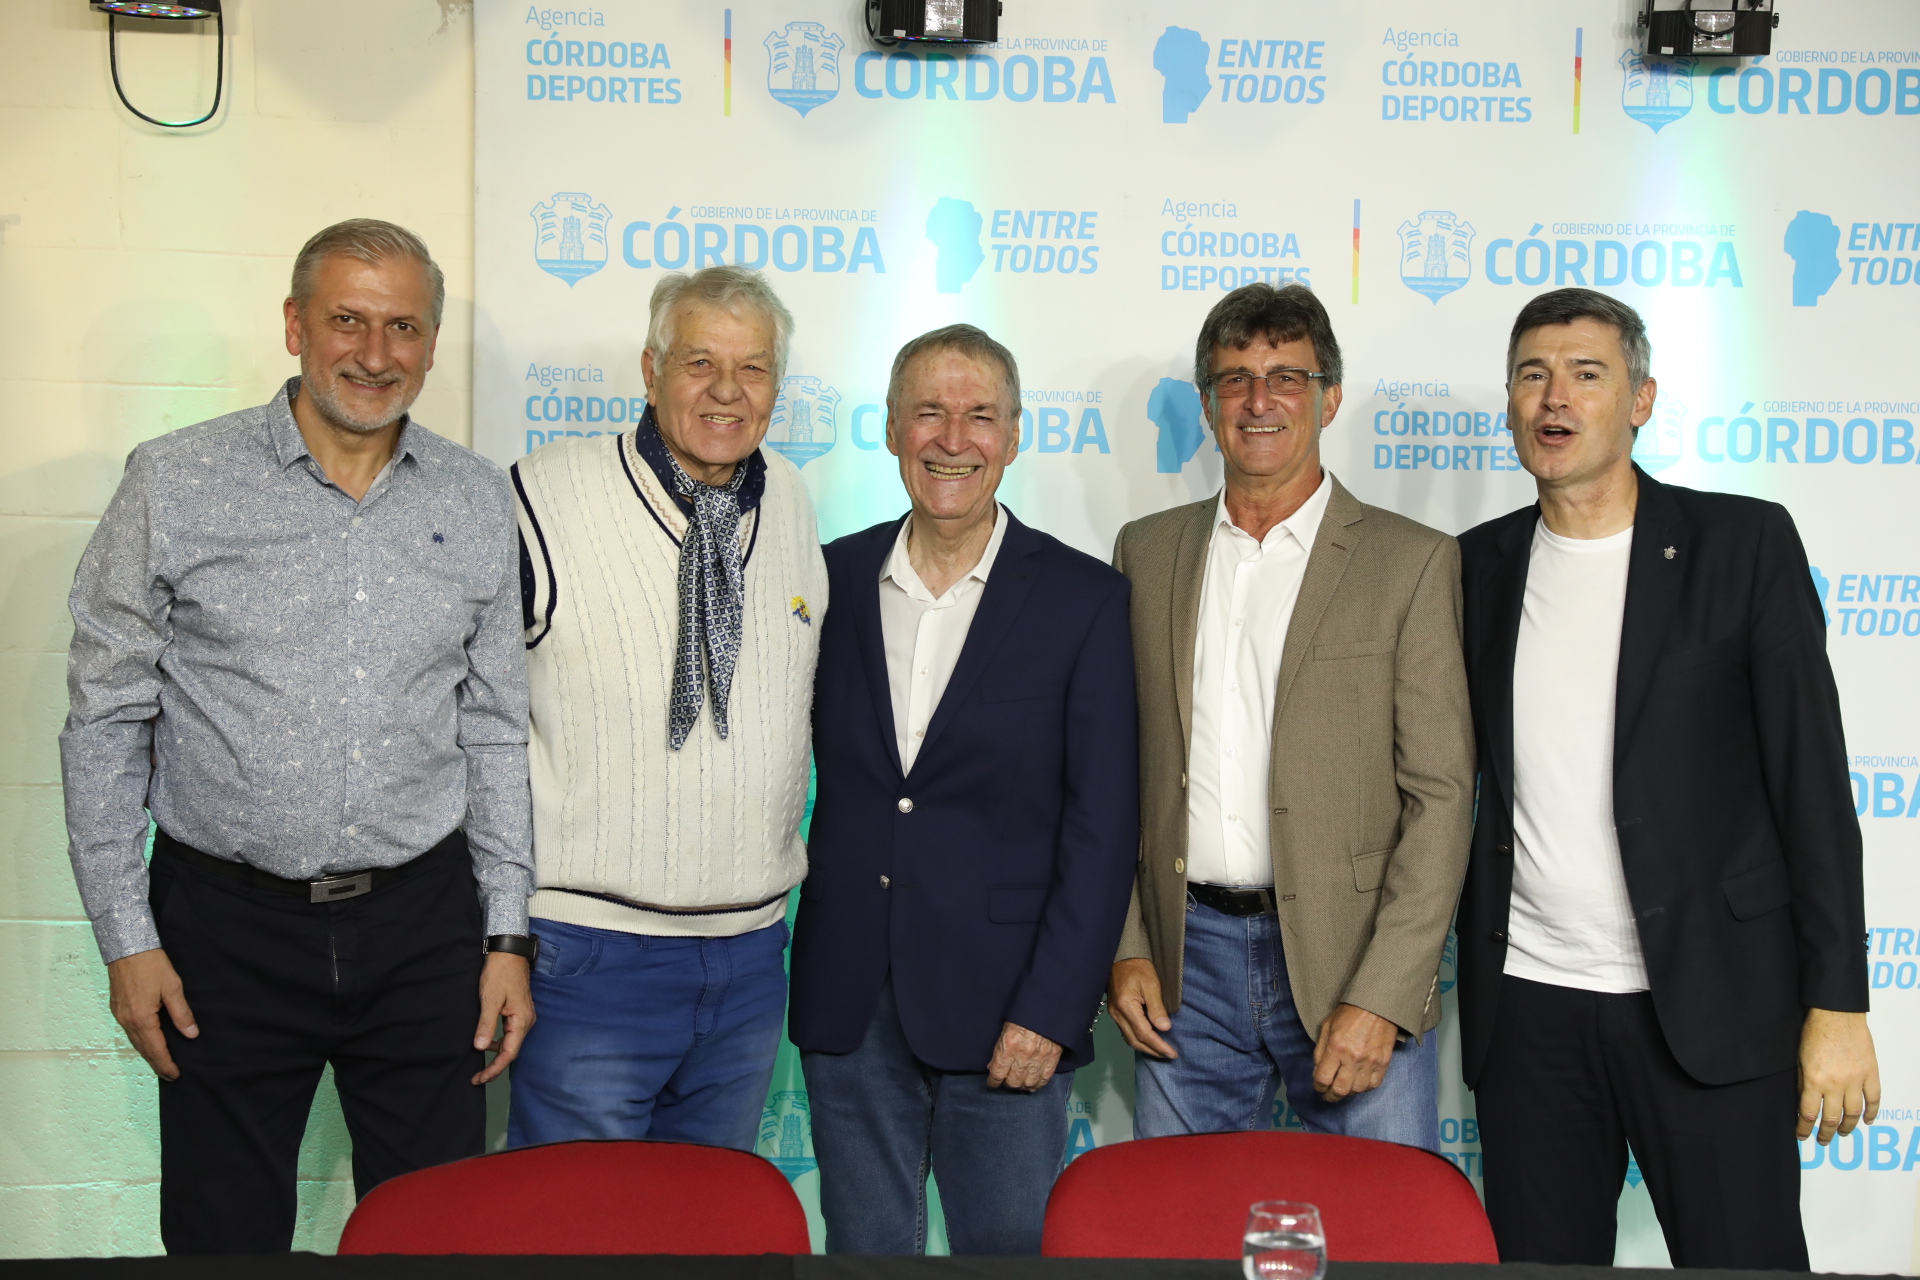 Córdoba oficializó su candidatura como sede del Mundial 2030